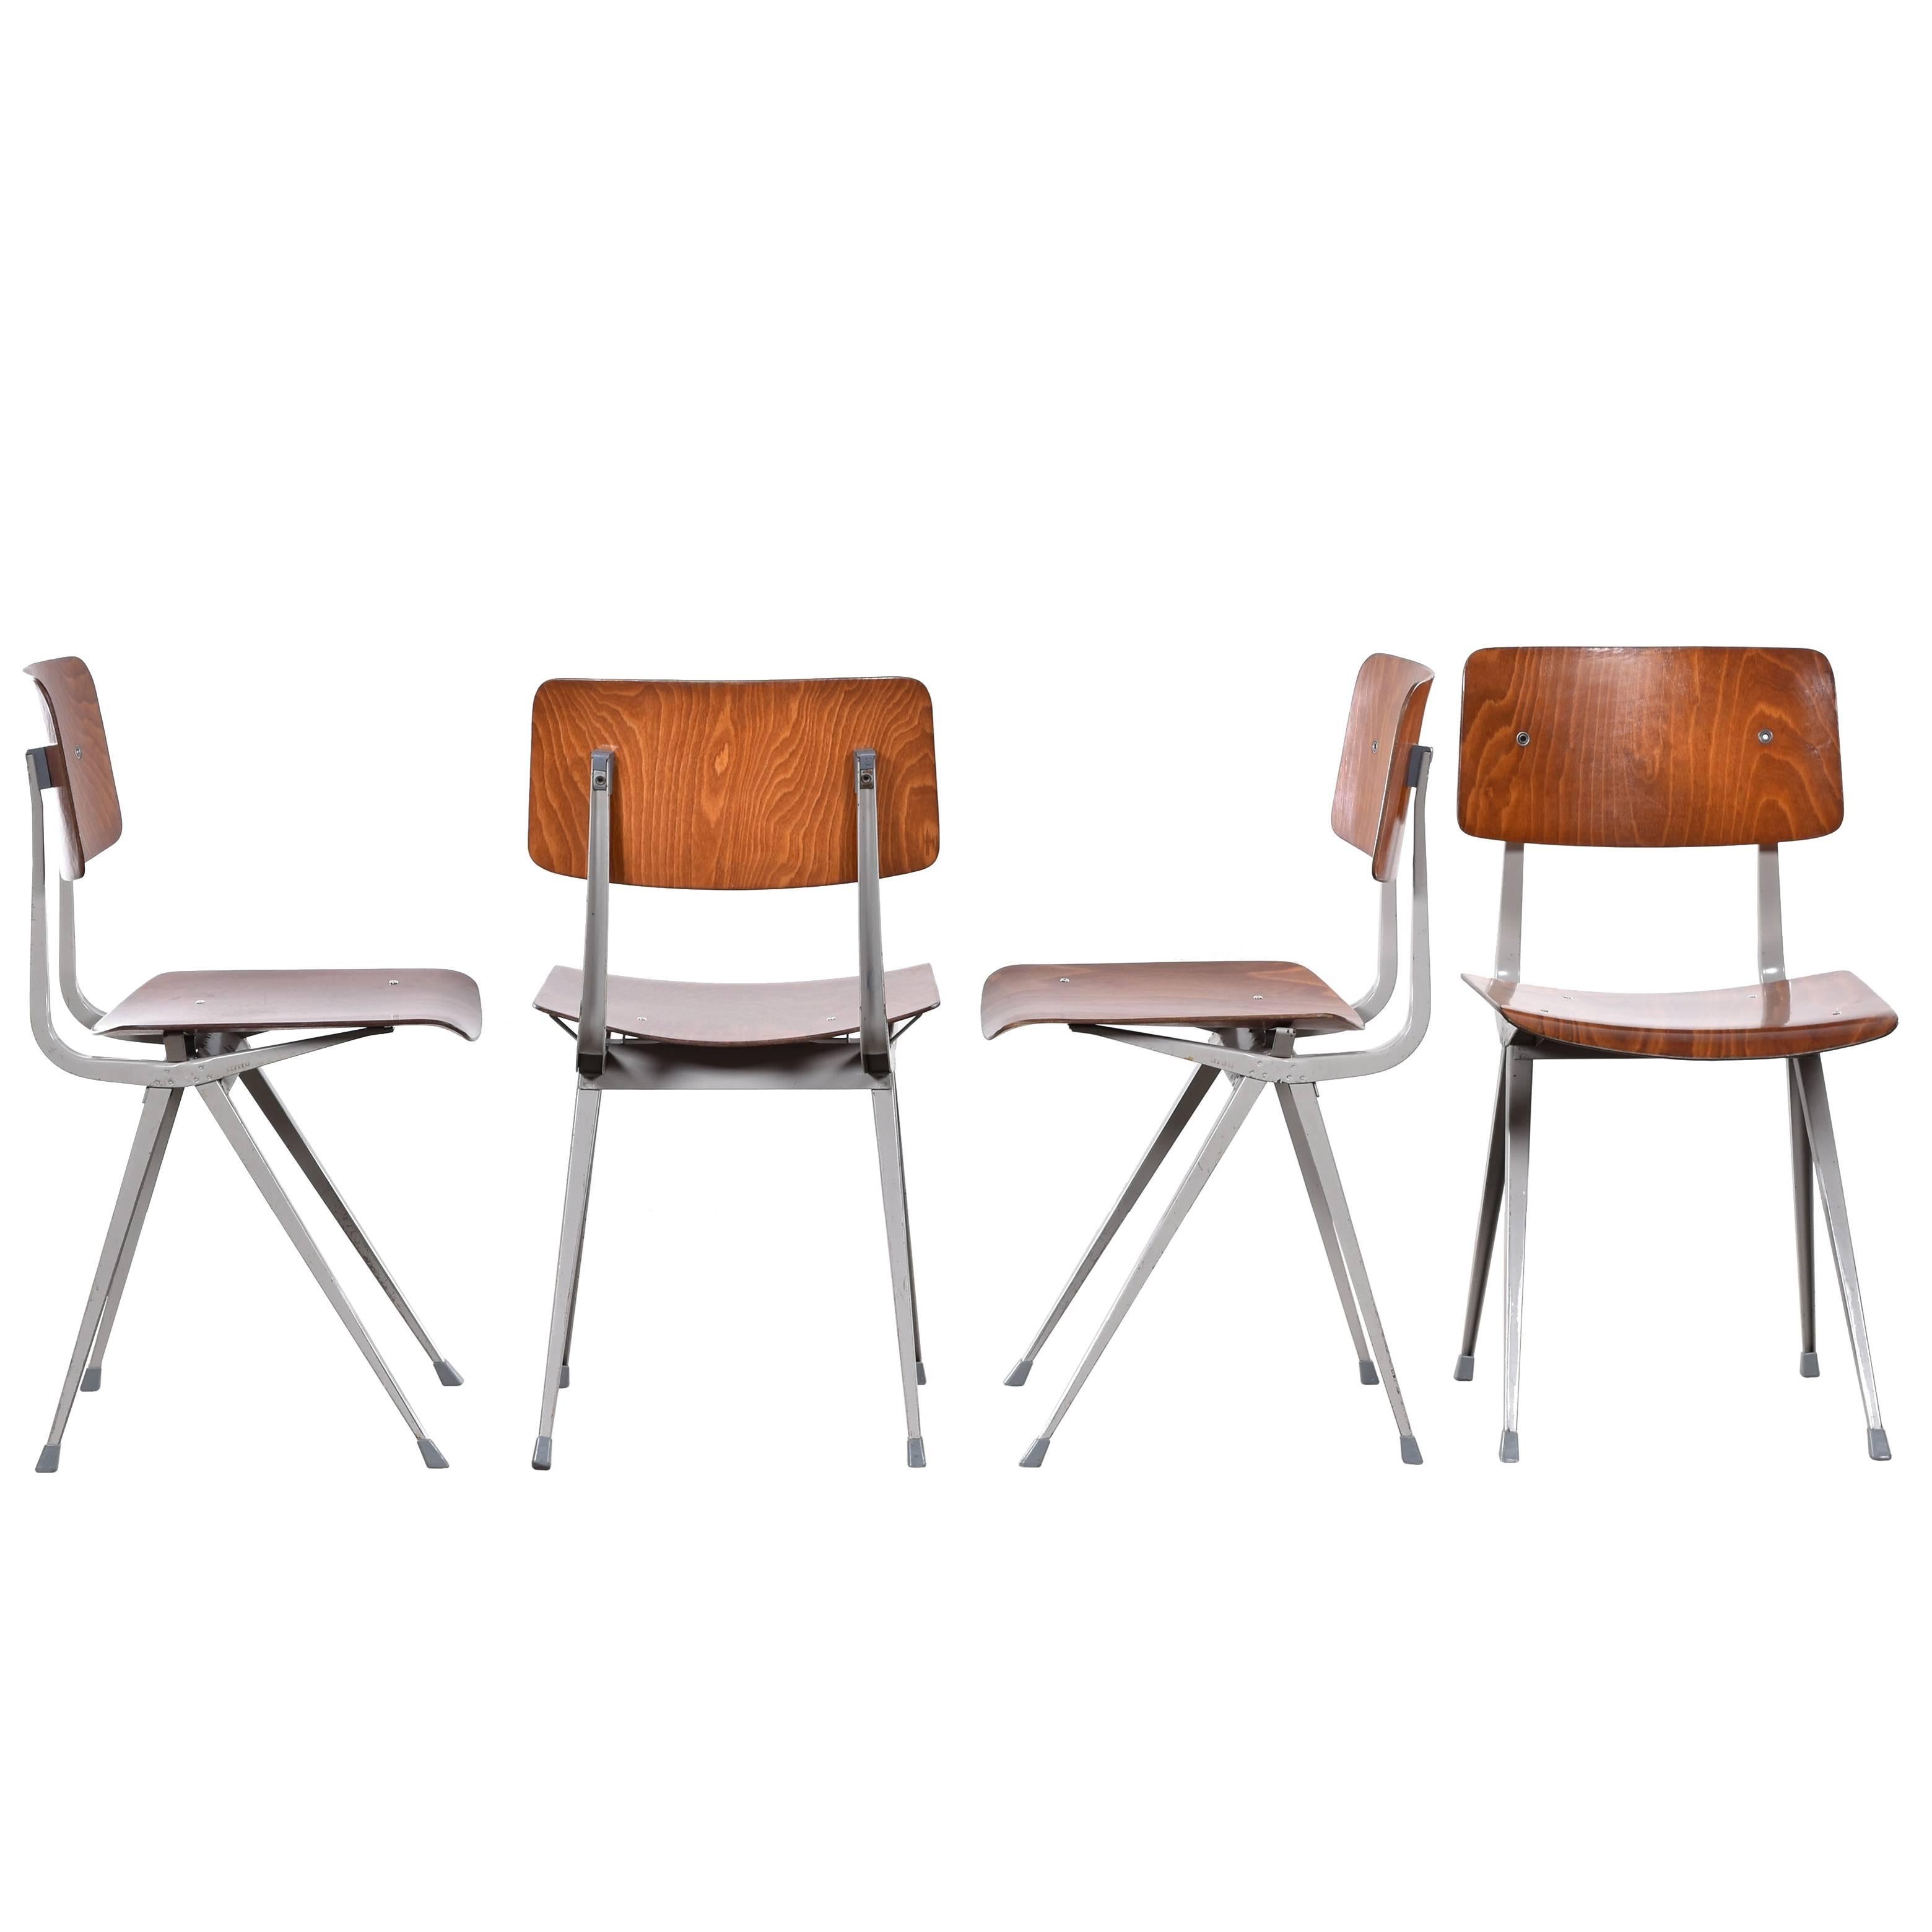 Friso Kramer Result Plywood Chairs for Ahrend de Cirkel, Netherlands